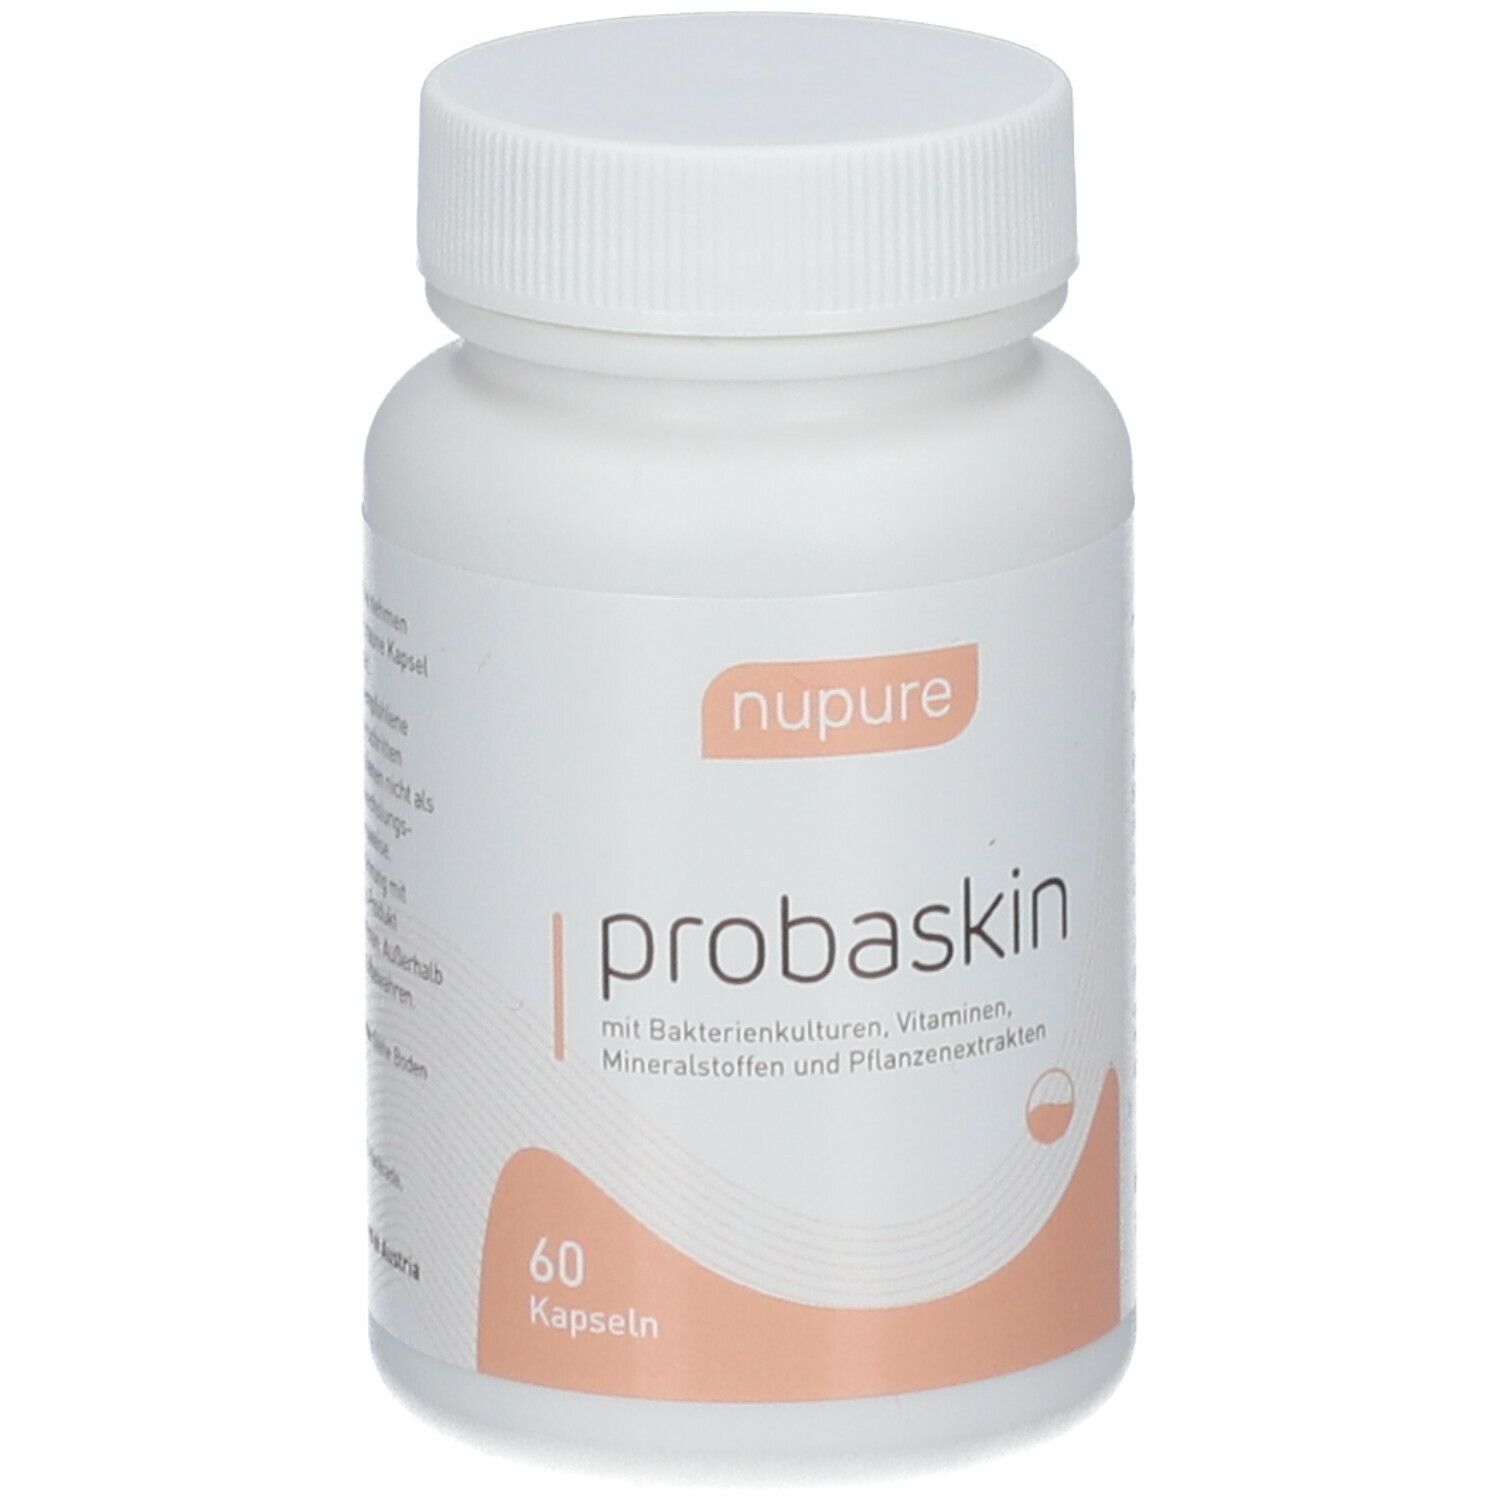 nupure probaskin - für einen gesunden Darm und strahlende Haut